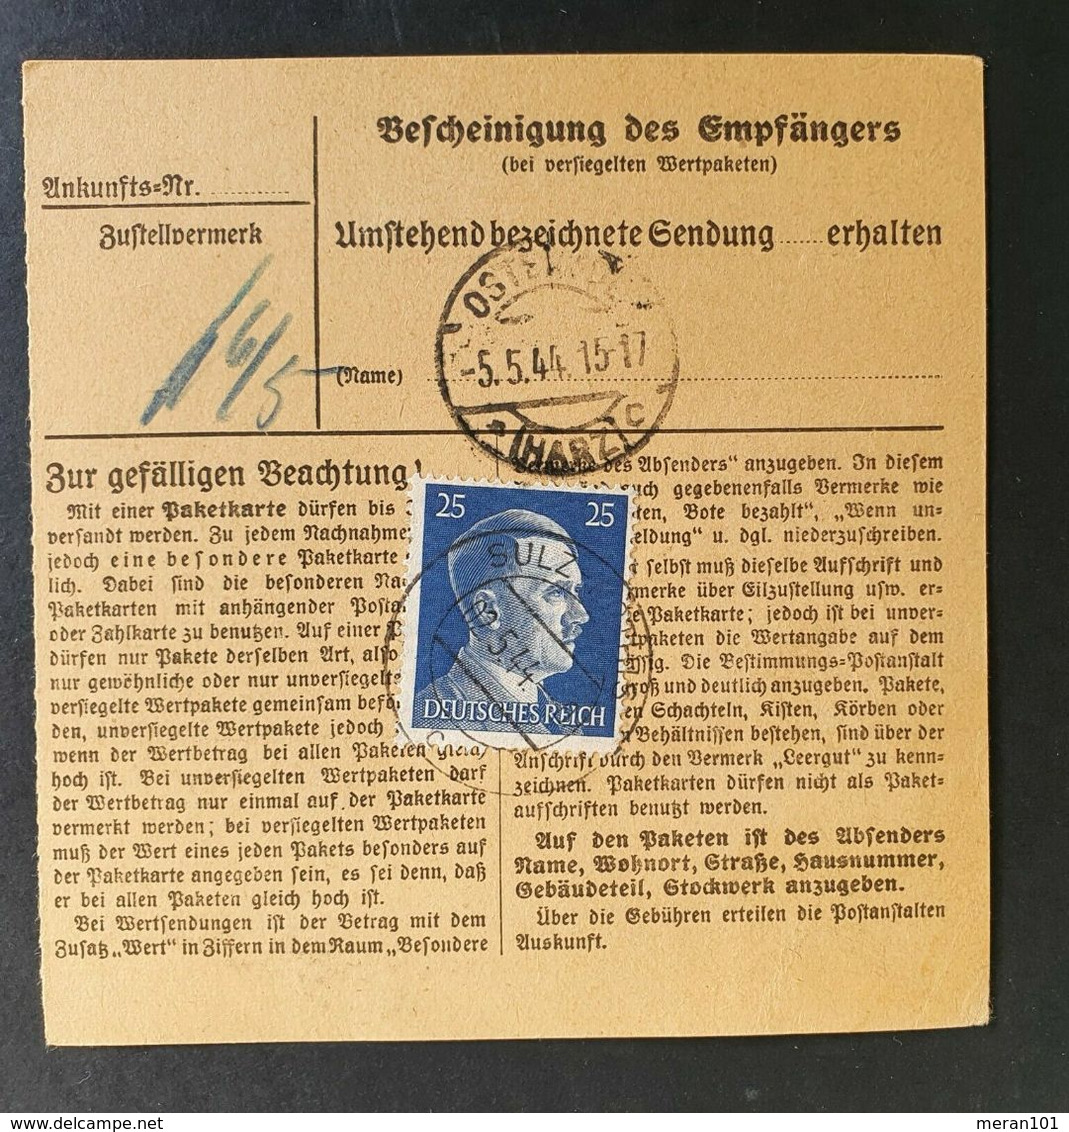 Deutsches Reich 1944, Paketkarte "Dringend" MiF SULZ-RÖTHIS Gelaufen - Covers & Documents